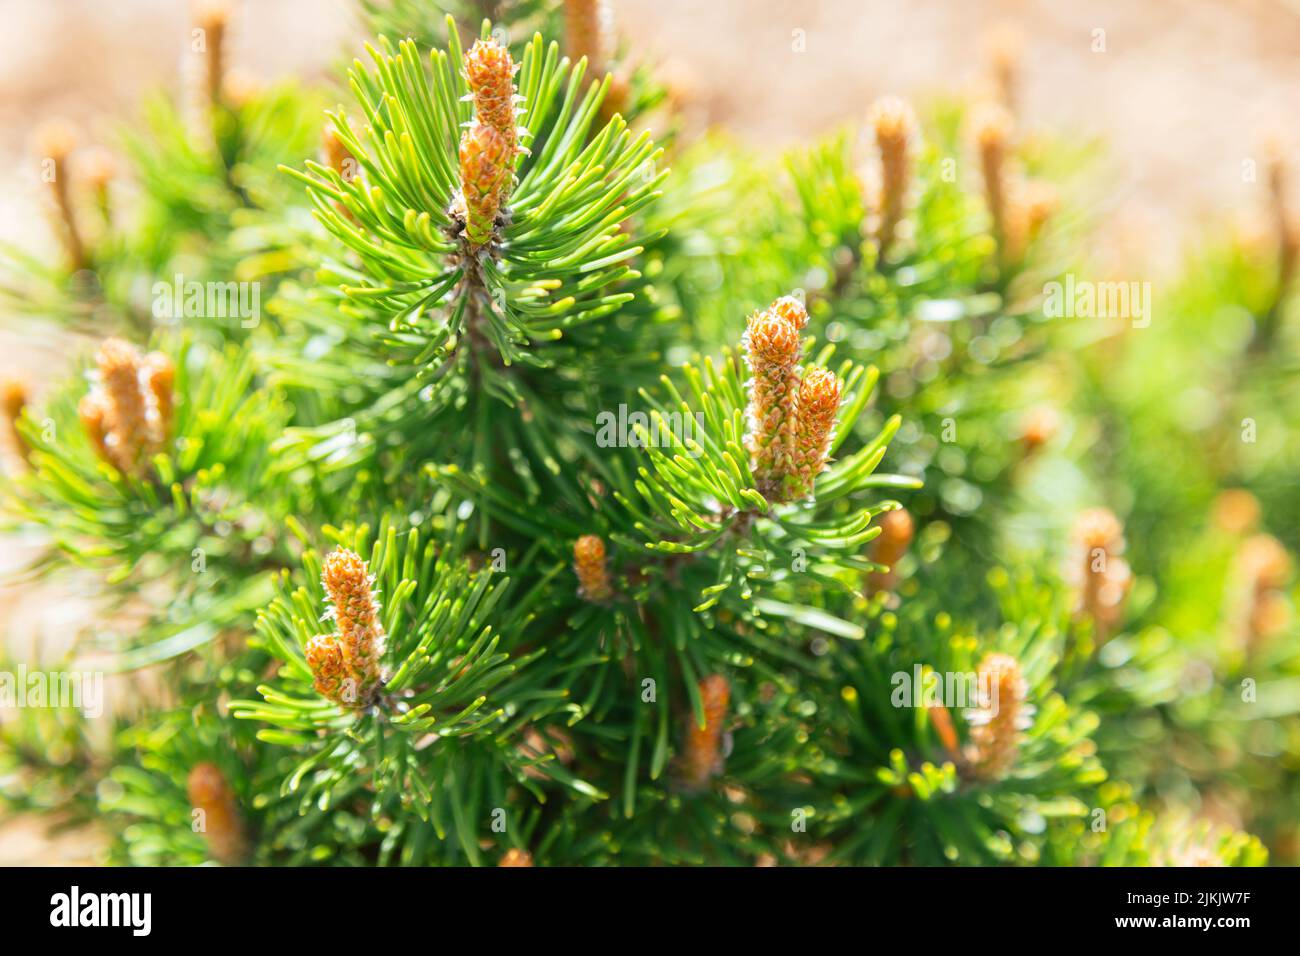 A budding mountain pine (pinus mugo) in spring. Selective focus. Stock Photo